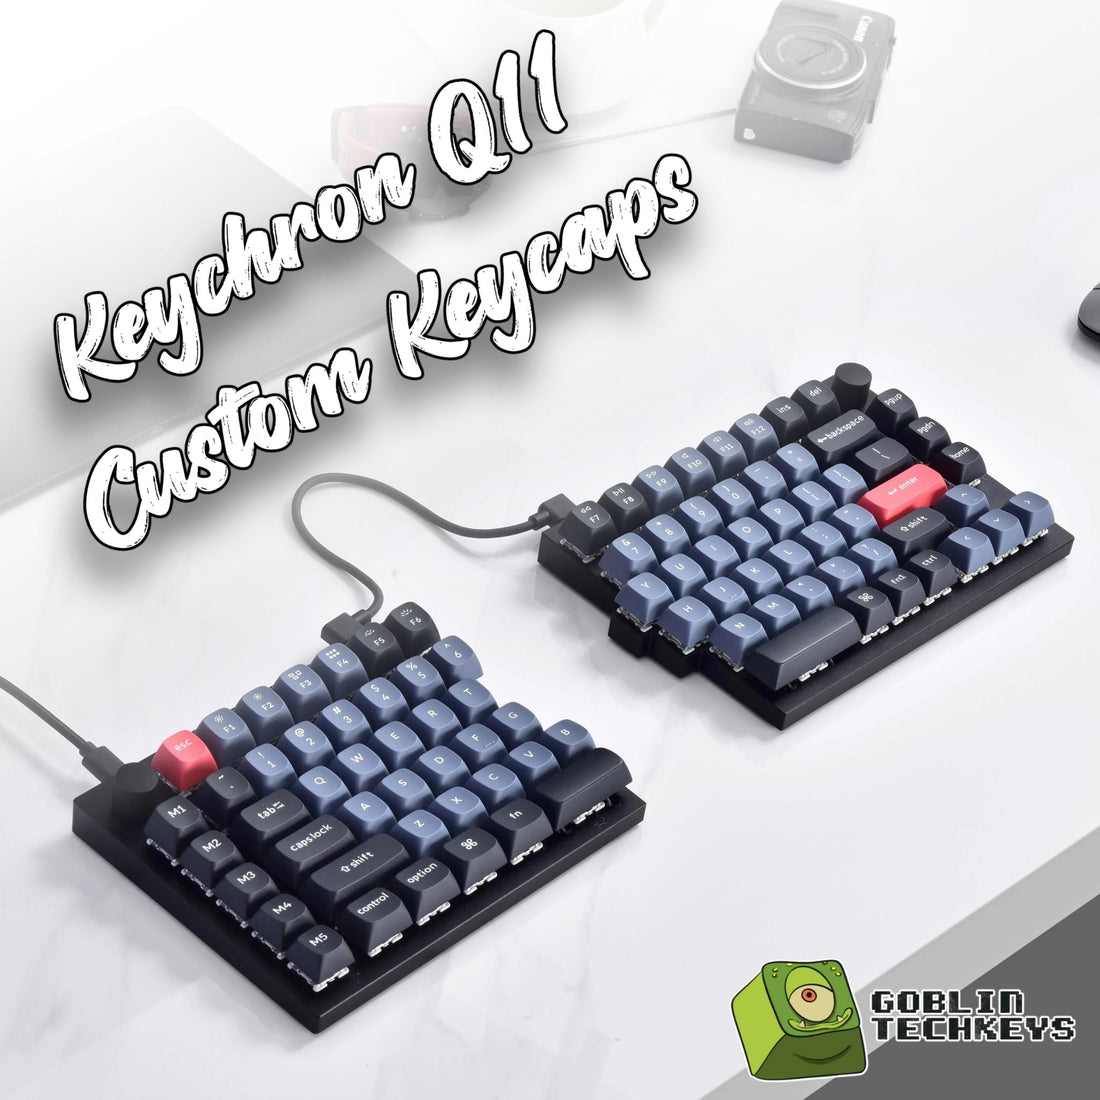 Keychron Q11 Custom Keycaps is available now - Goblintechkeys